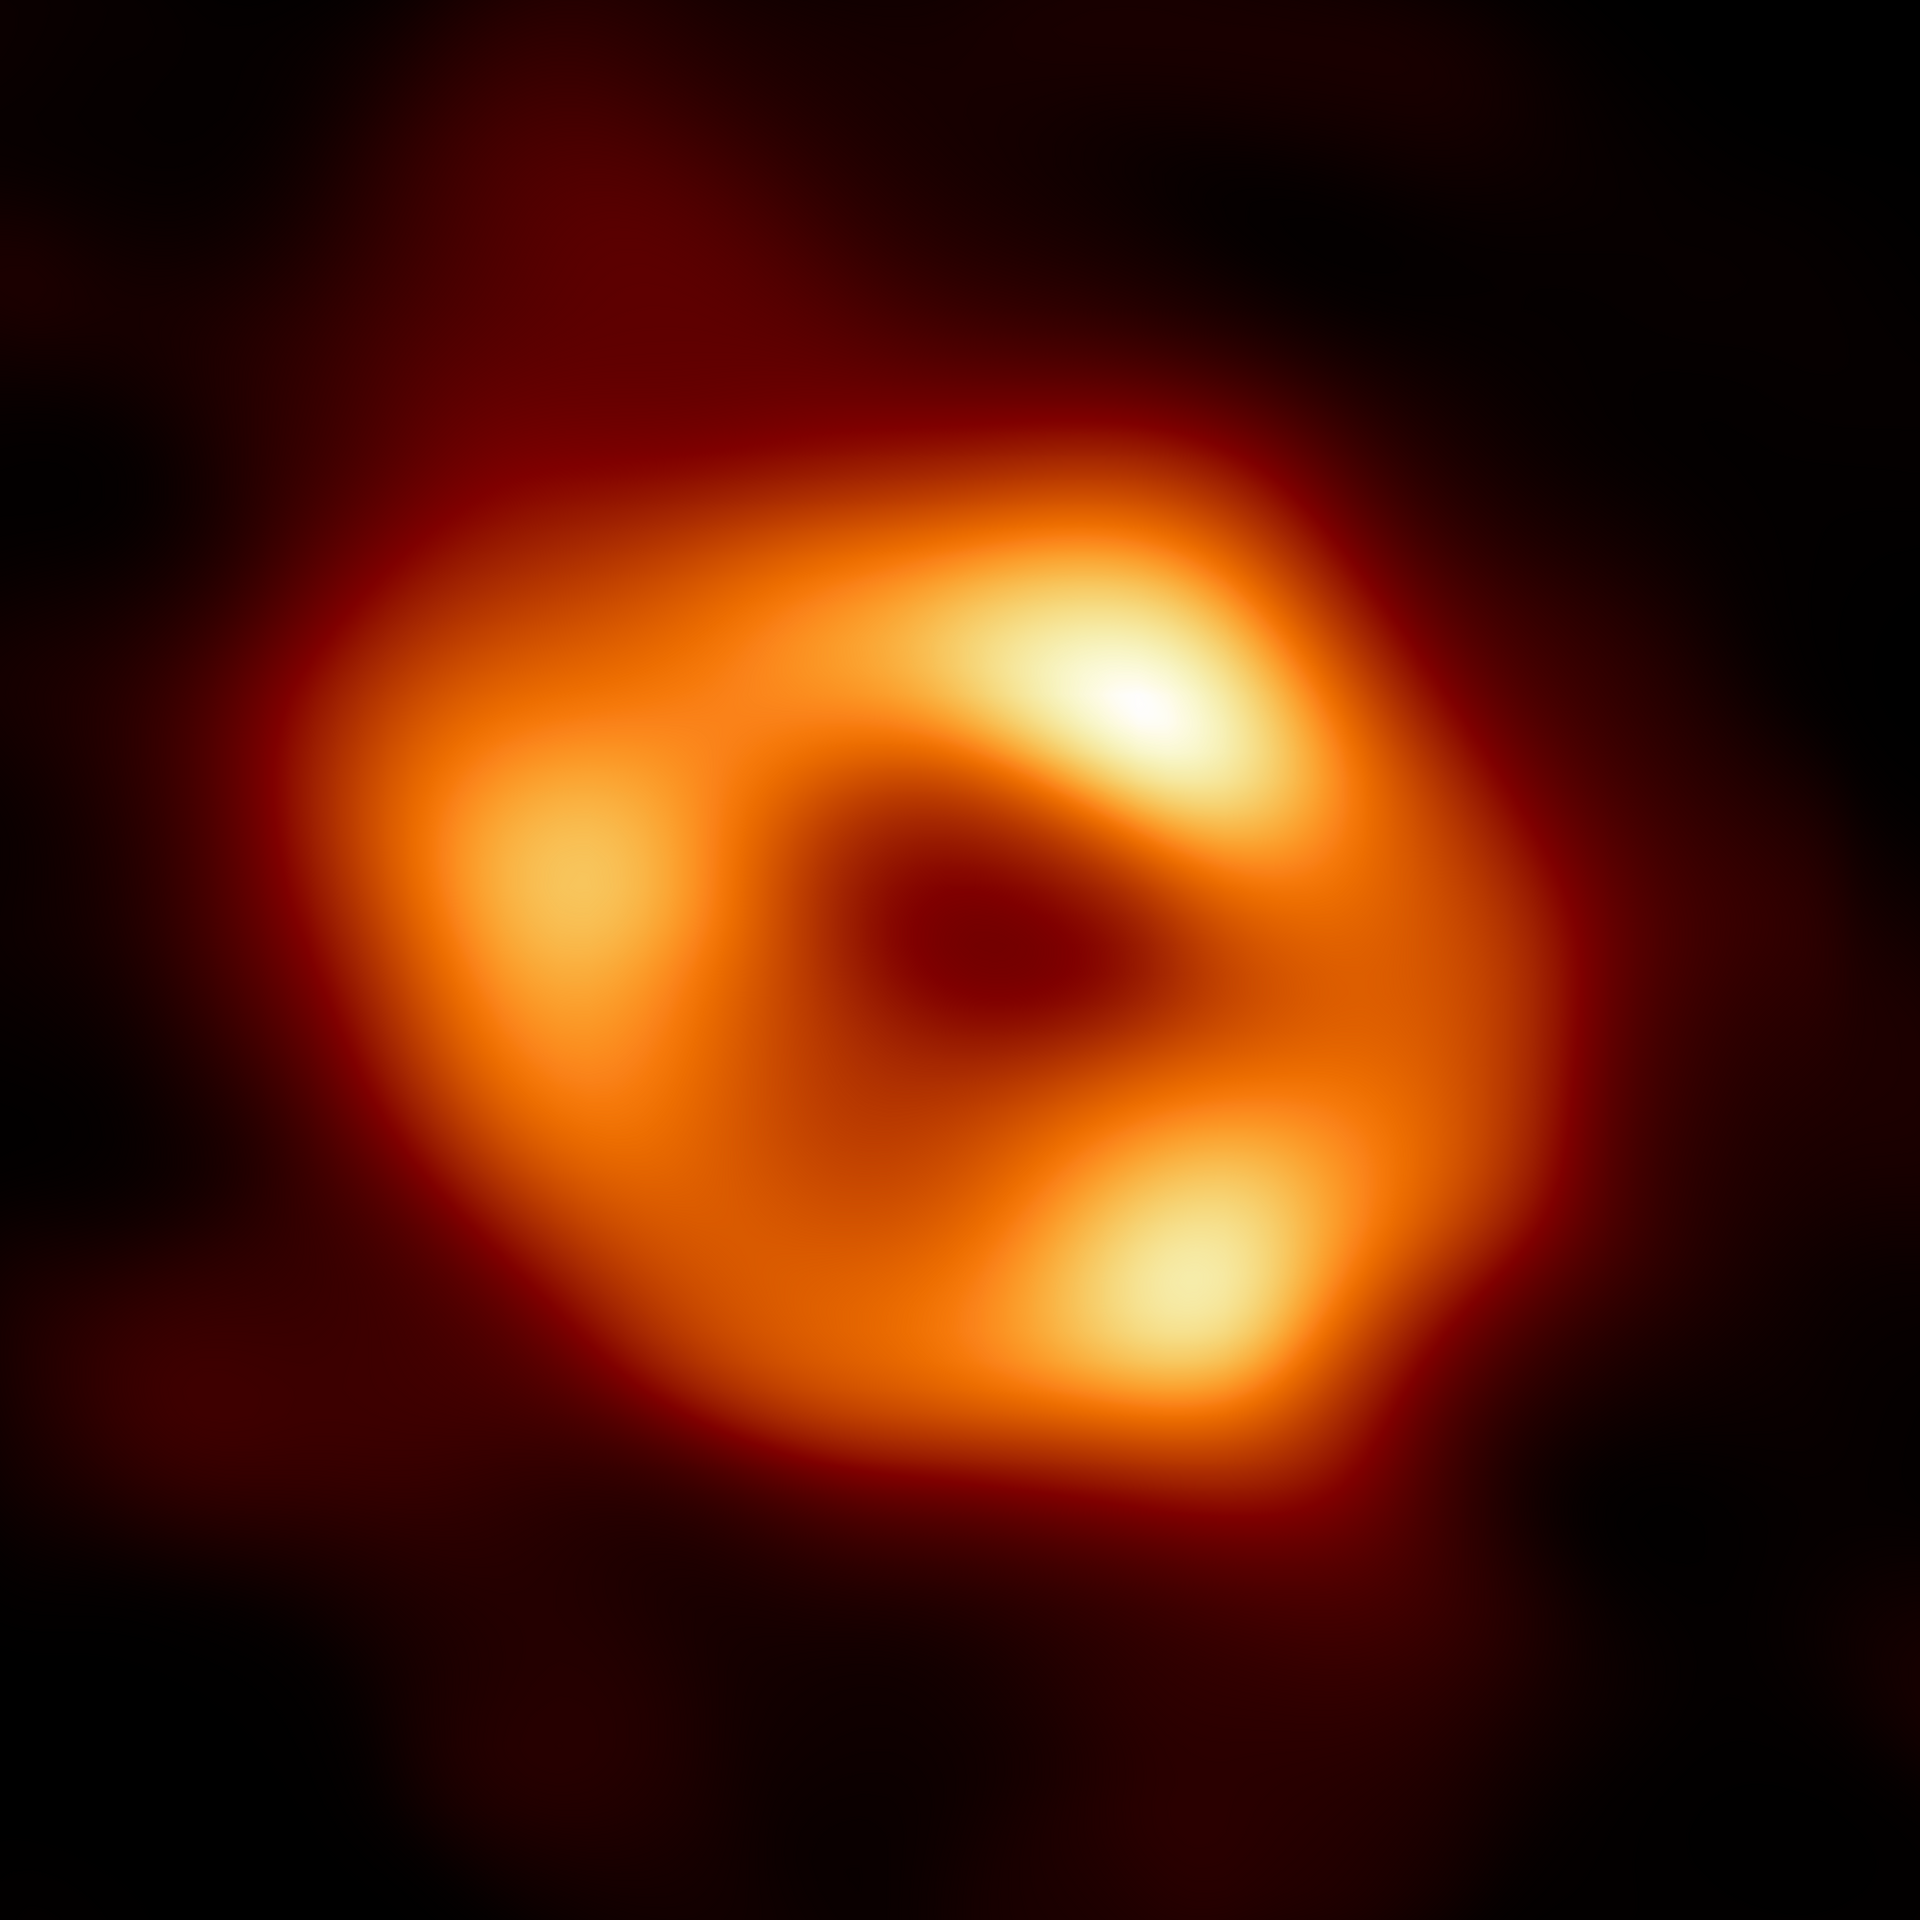 Изображение центра Галактики помогло ученым понять "режим питания" черной дыры